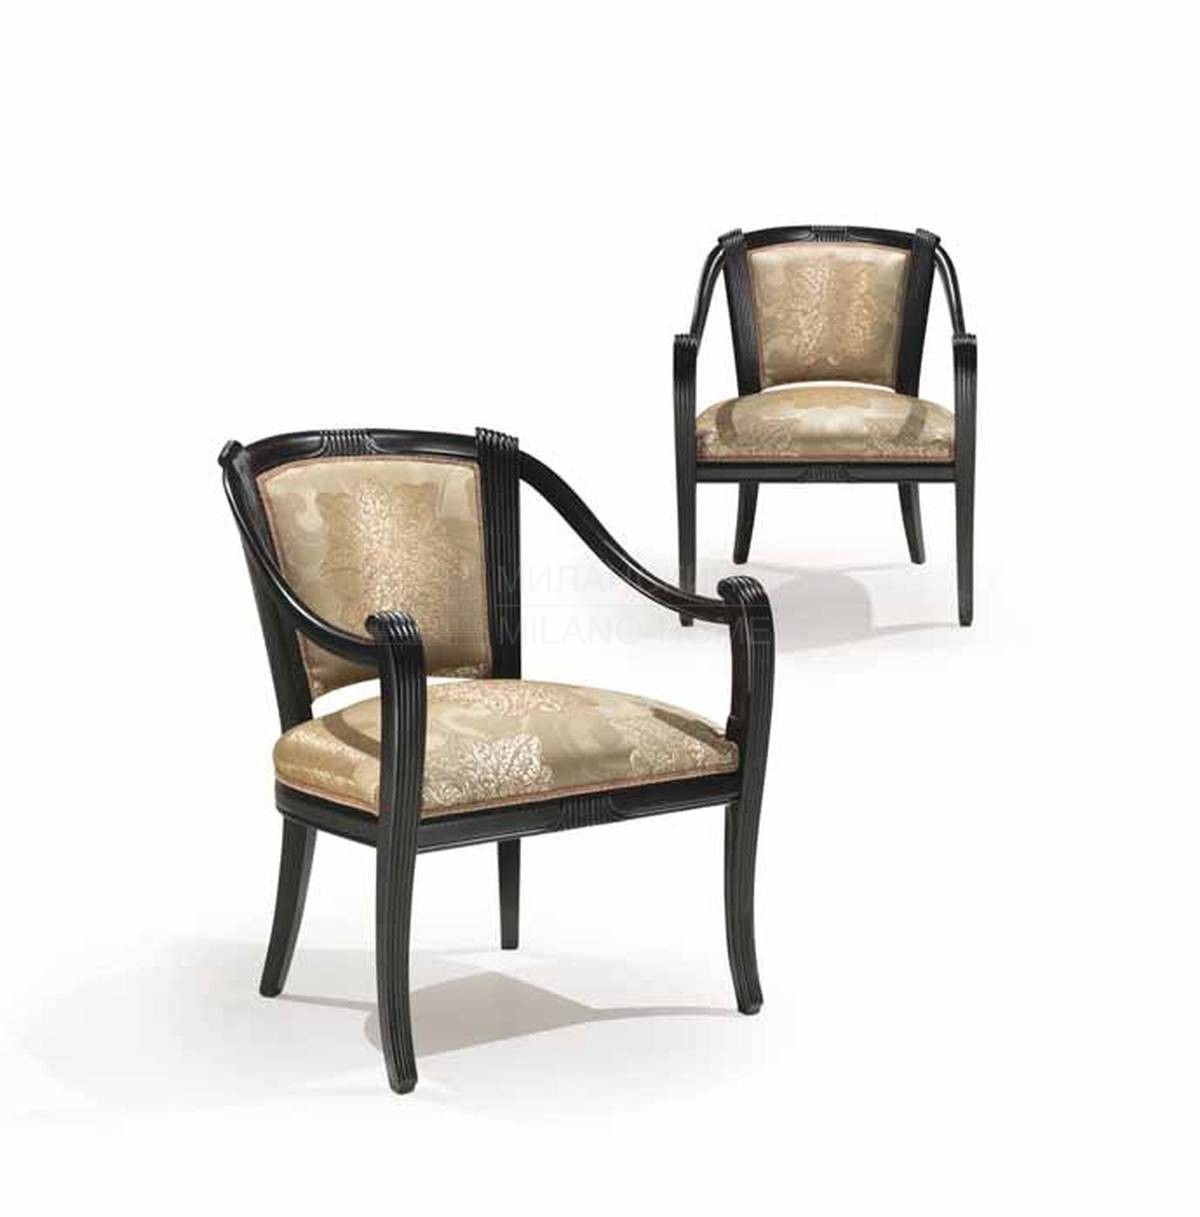 Кресло 2576/armchair из Италии фабрики ANGELO CAPPELLINI 